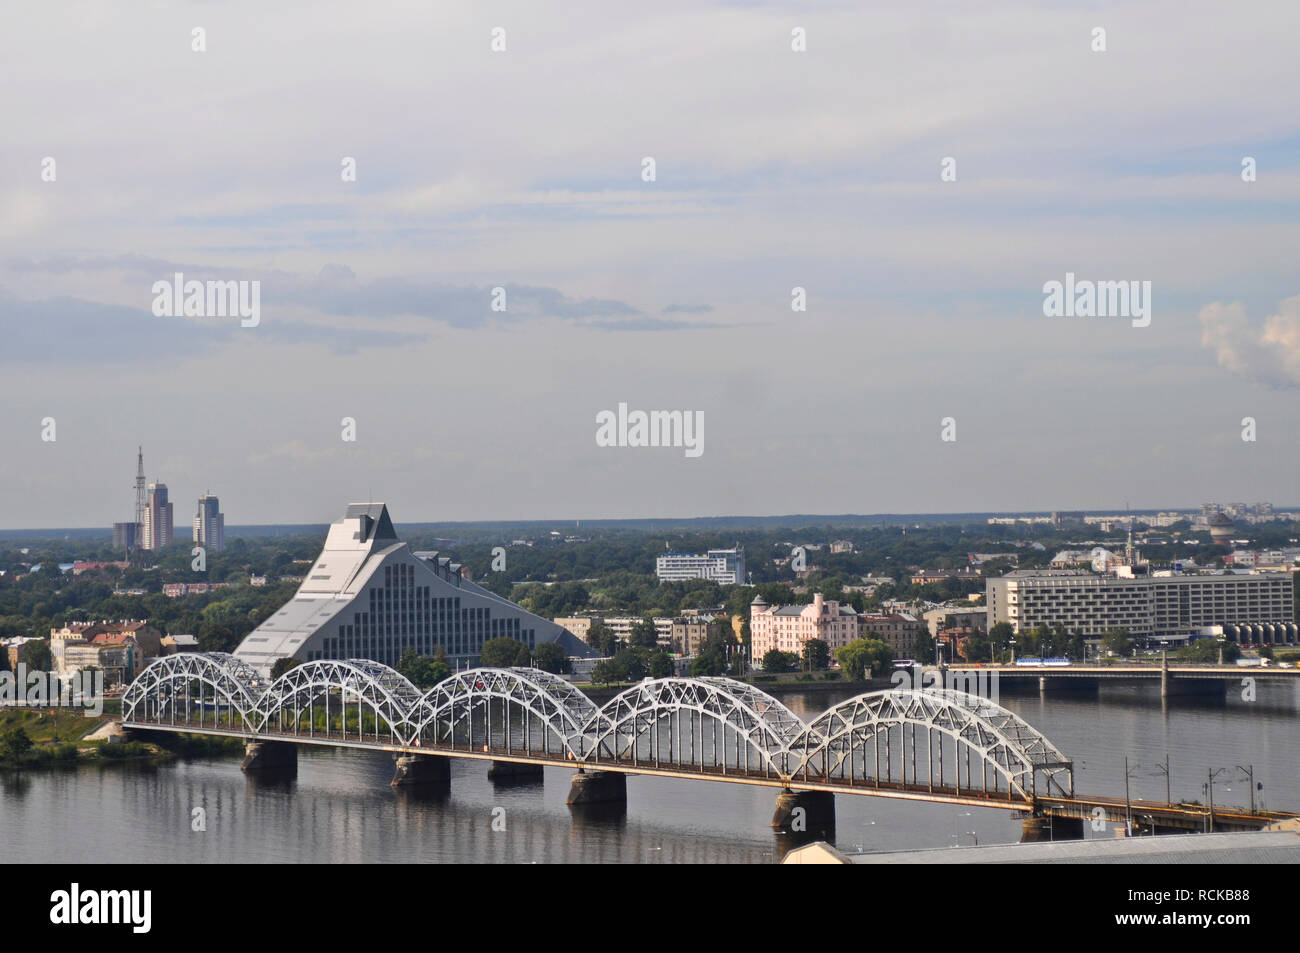 Latvijas nacionala biblioteka hi-res stock photography and images - Alamy